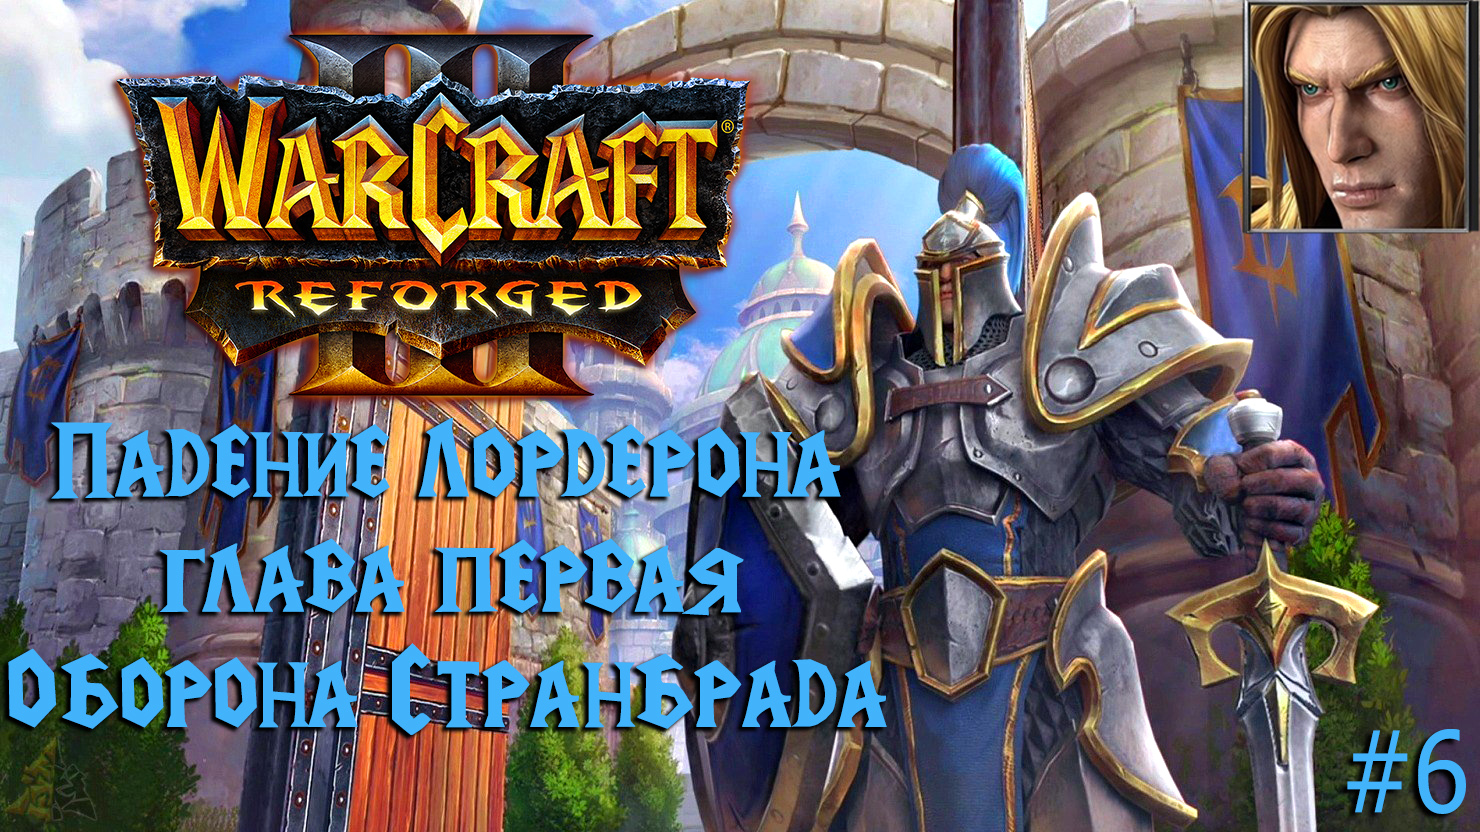 Warcraft III: Reforged | Падение Лордерона | Глава первая | Оборона Странбрада | #6